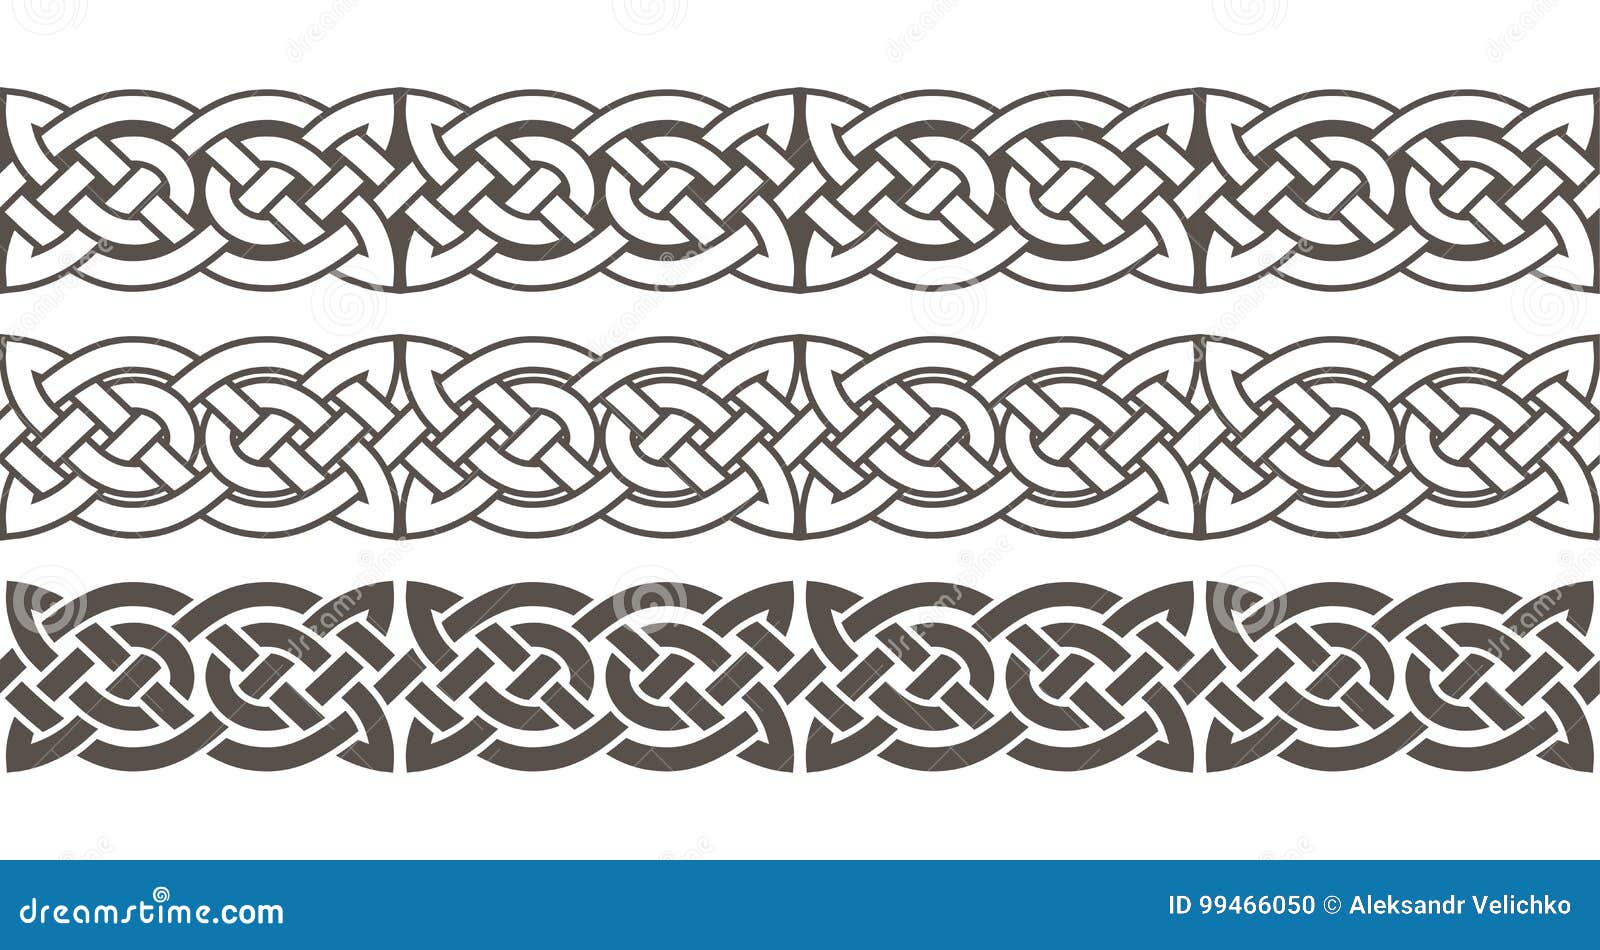 celtic knot braided frame border ornament.